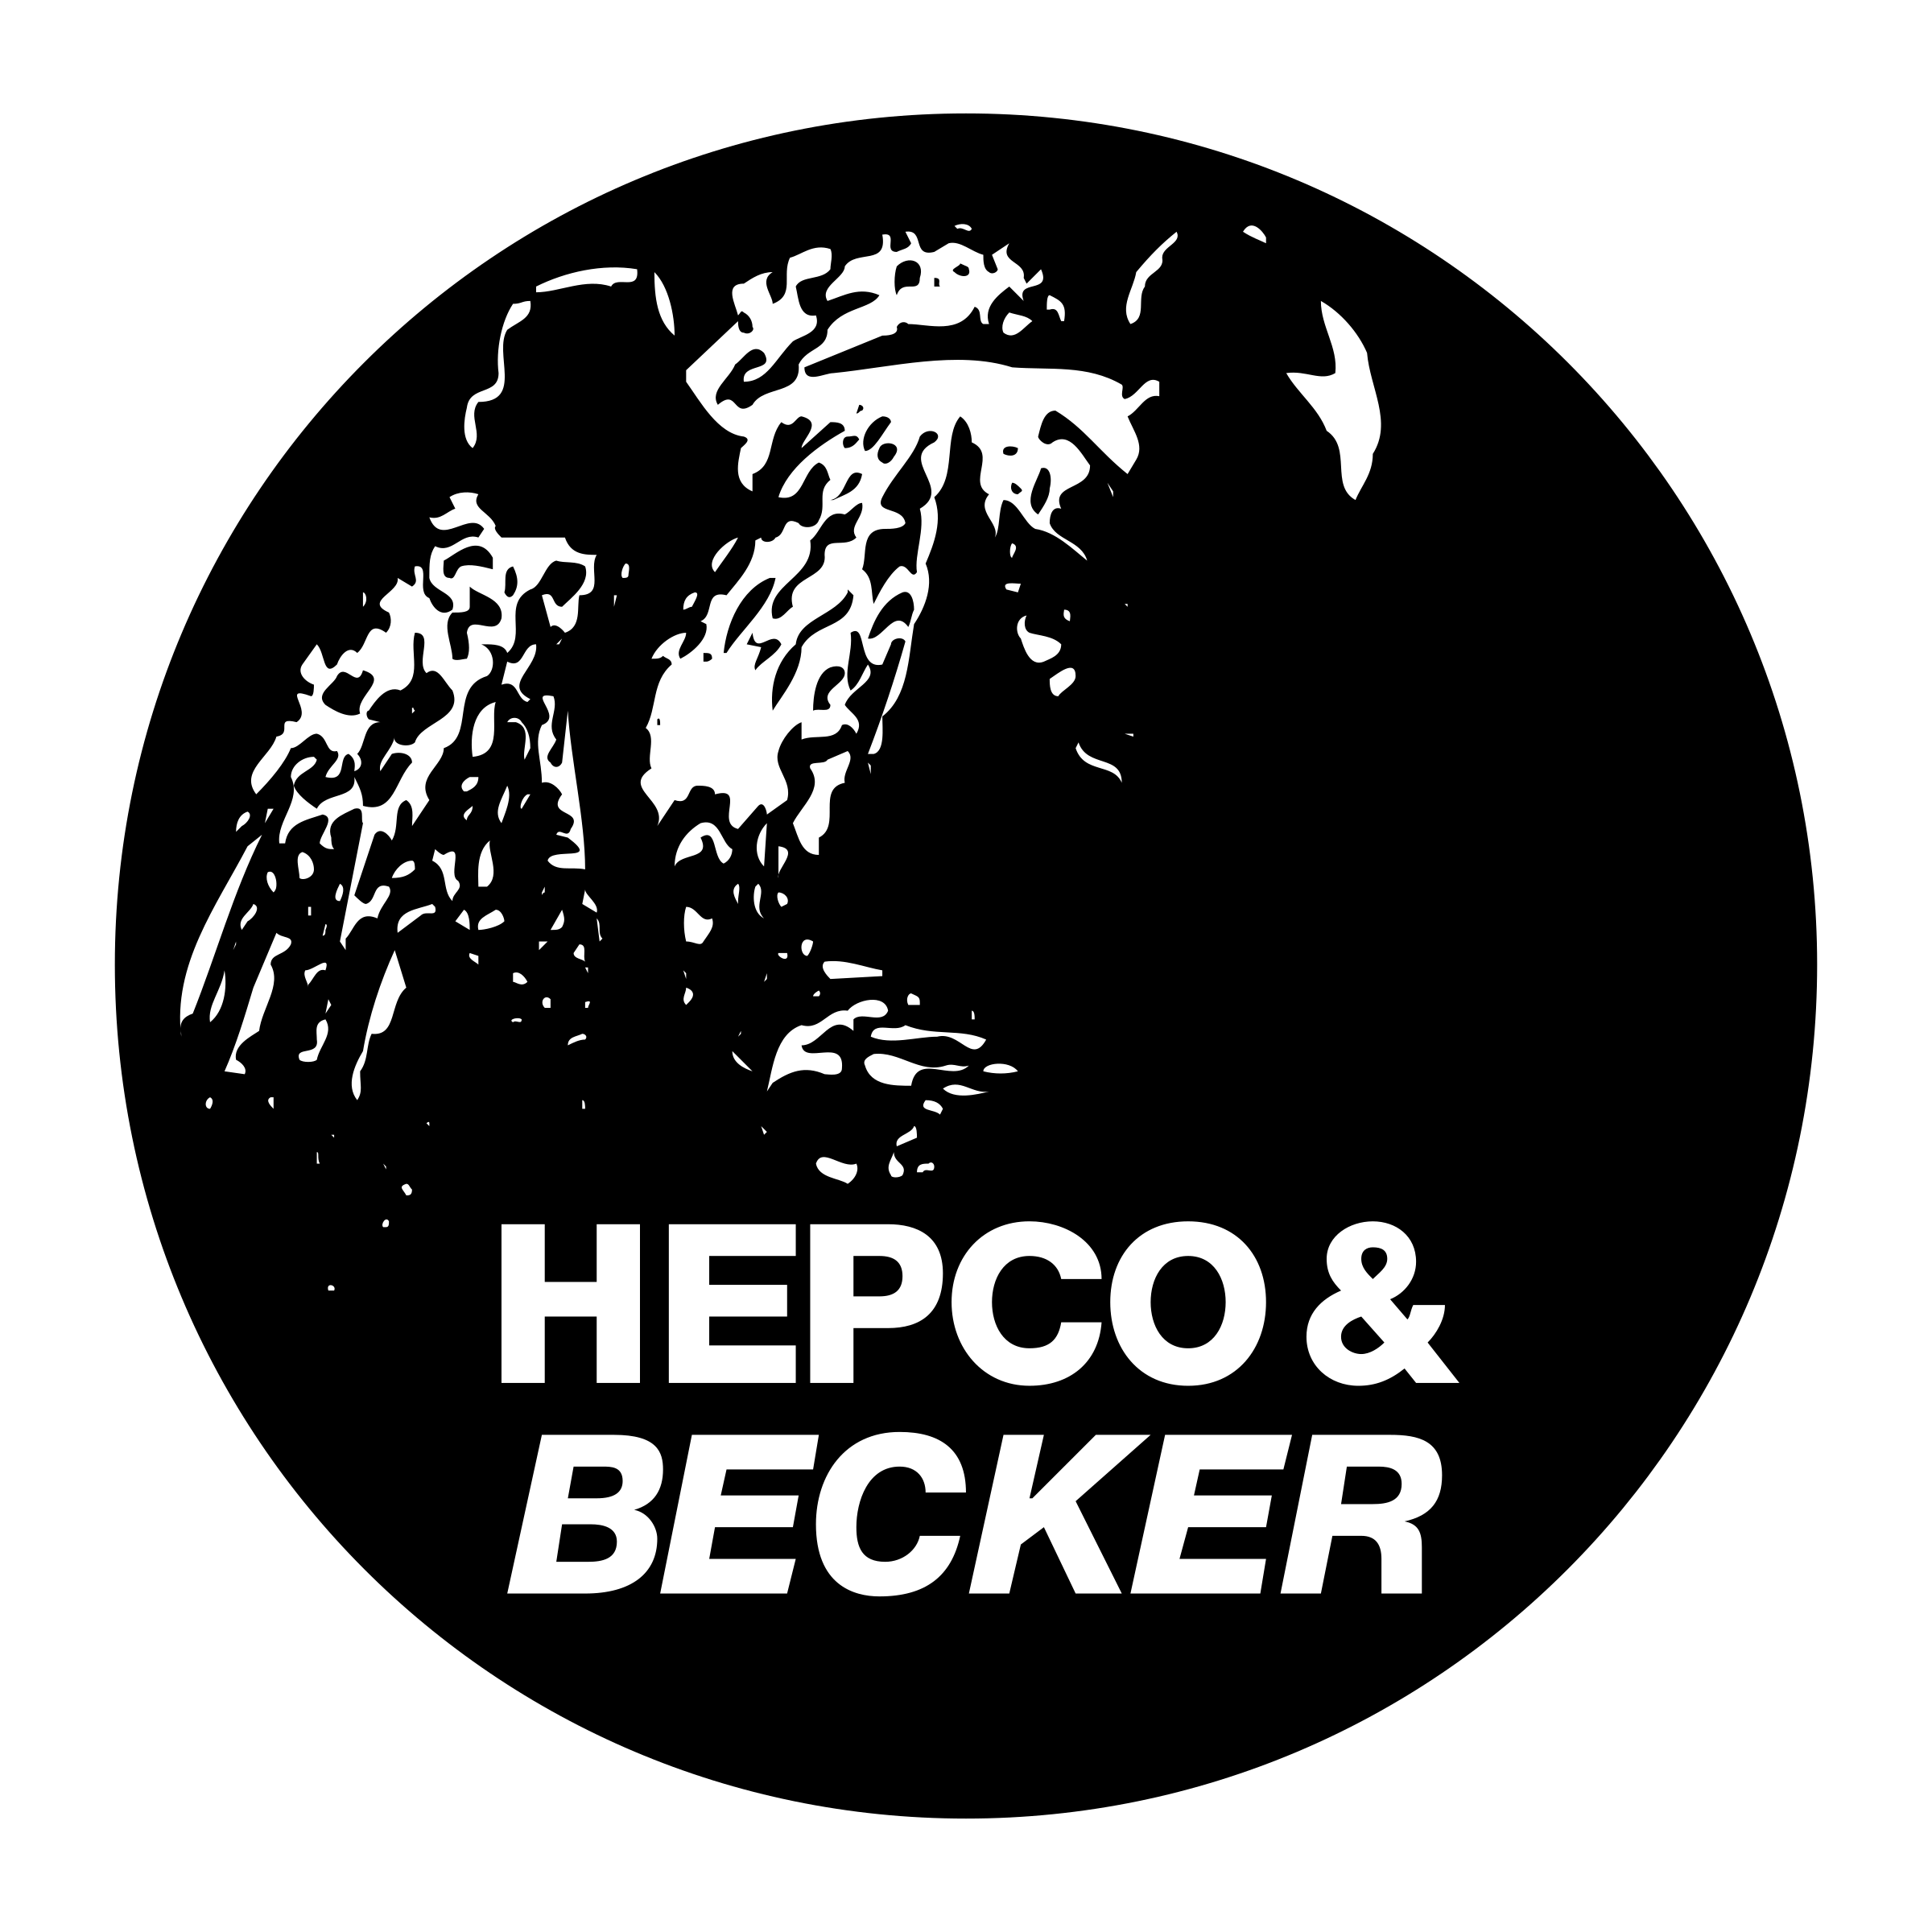 Becker Logo - Hepco & Becker Logo PNG Transparent & SVG Vector - Freebie Supply